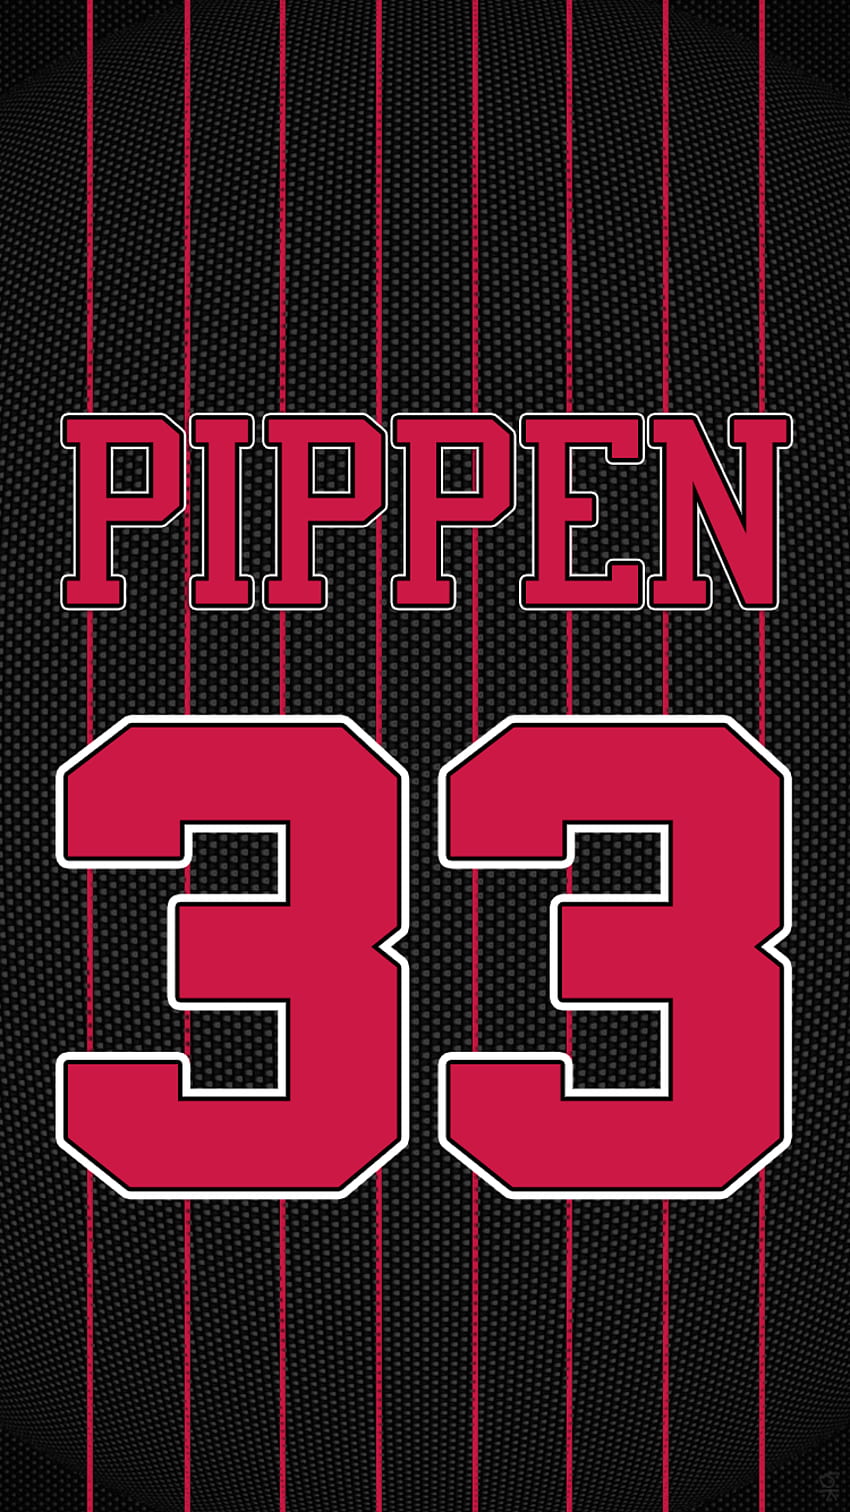 Chicago Bulls Pippen Png.613147 750×1334 pikseli. Chicago Bulls, Scottie Pippen Tapeta na telefon HD